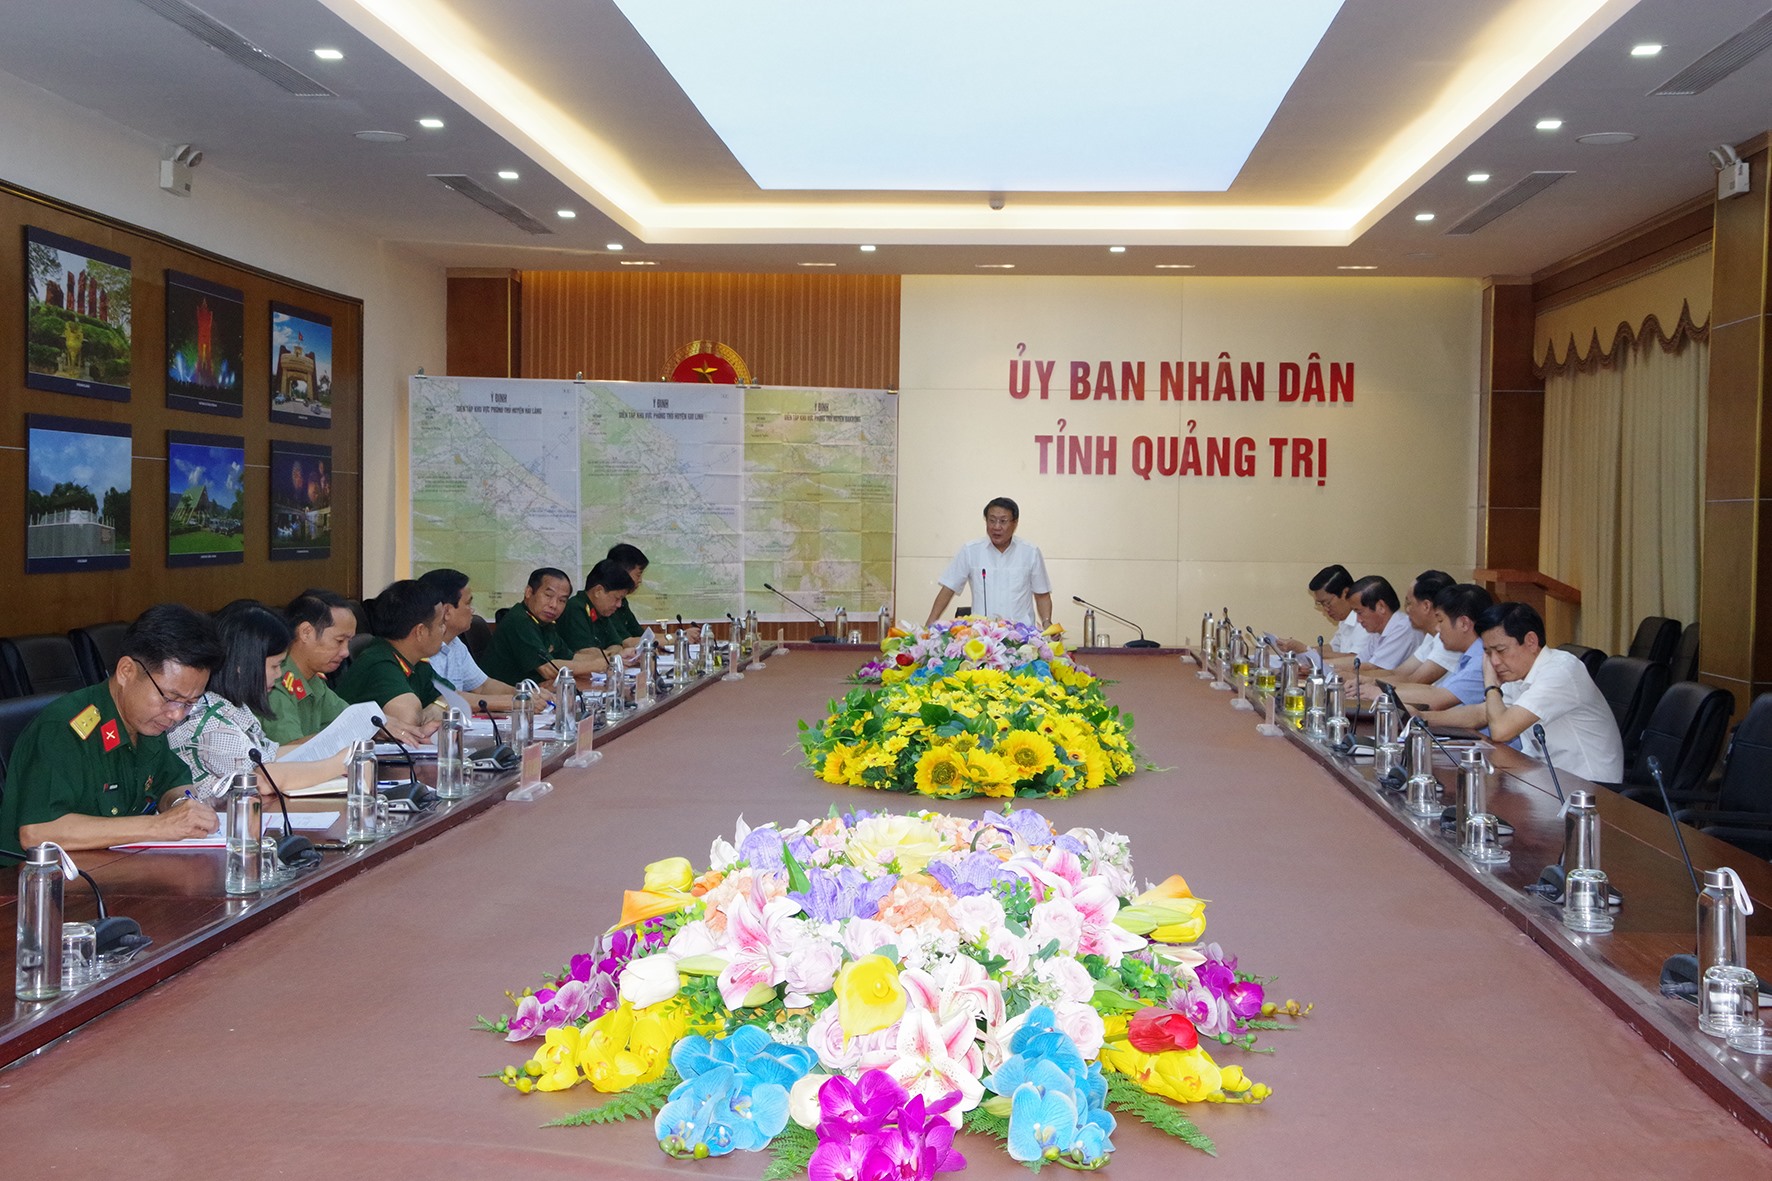 Phó Chủ tịch Thường trực UBND tỉnh Hà Sỹ Đồng phát biểu tại cuộc họp - Ảnh: Nho Dũng